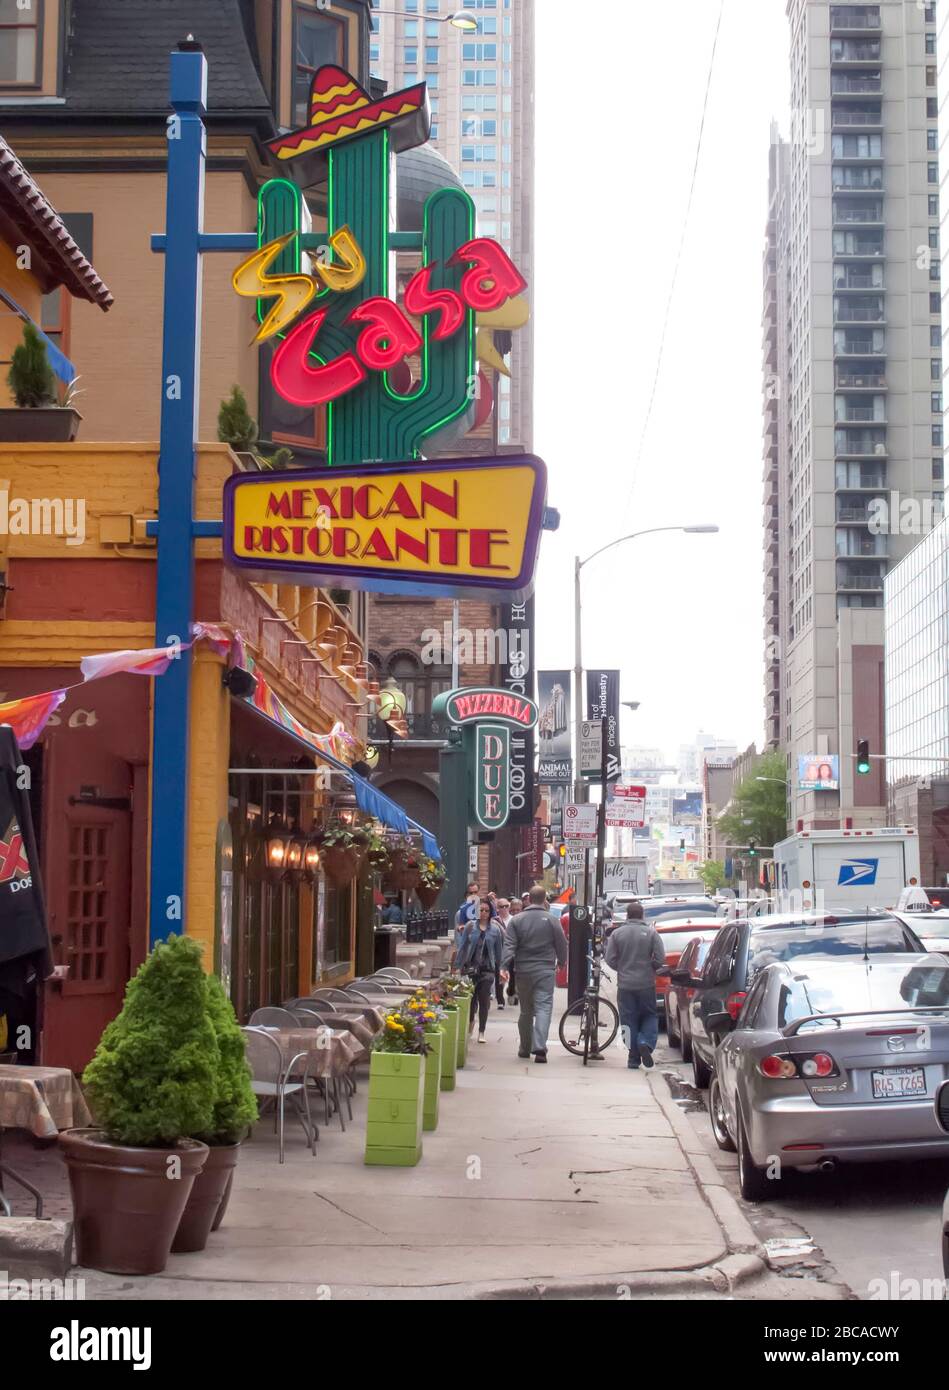 Mexikanisches Restaurant in Chicago mit italienischer Schreibweise "Ristorante" Stockfoto